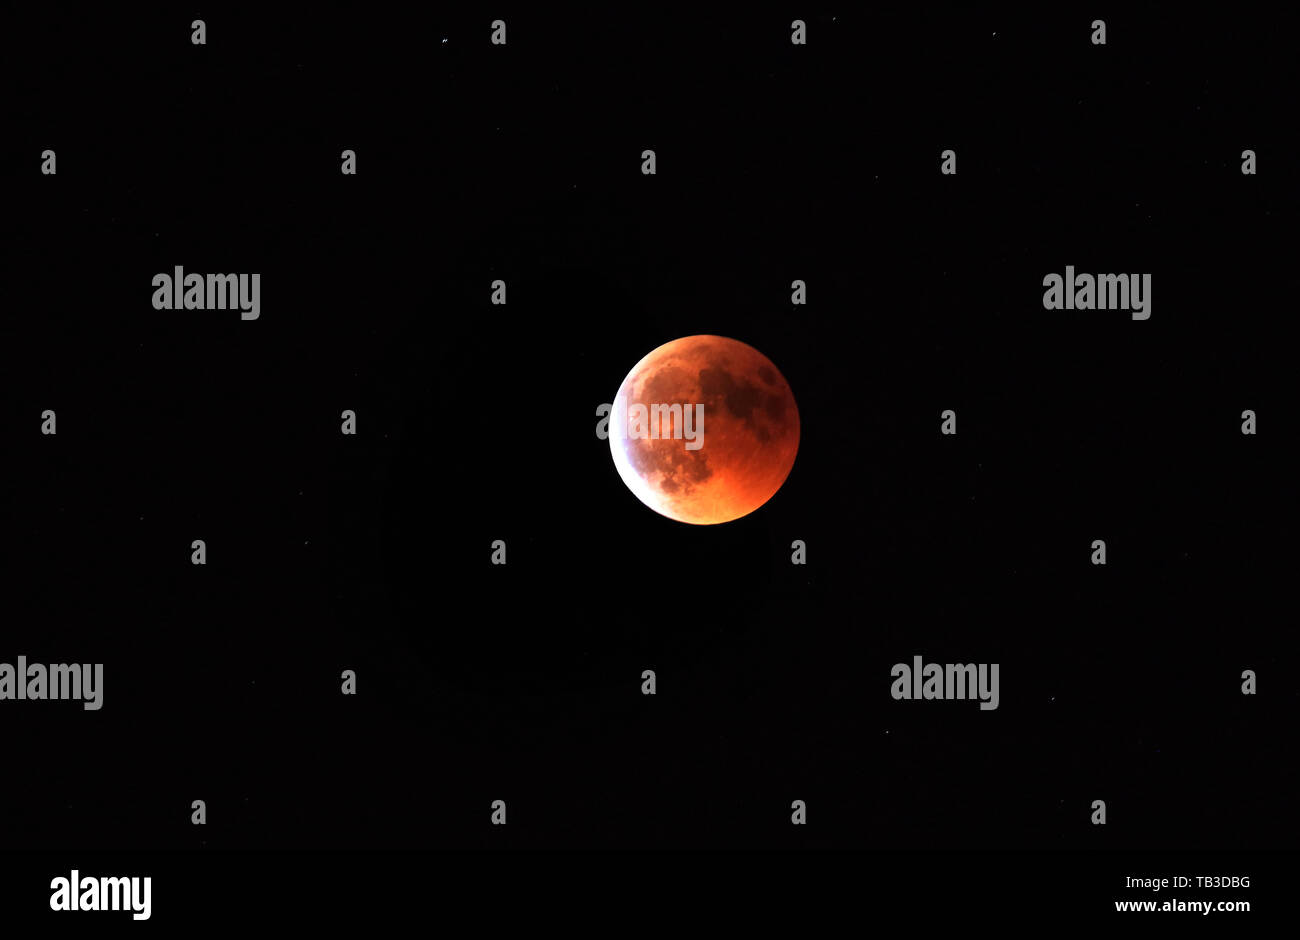 27.07.2018, Berlin, Berlin, Germania - eclissi lunare totale con rame-colorato di rosso la luna piena, la cosiddetta luna di sangue. 00S180727D956CAROEX.JPG [modello Foto Stock